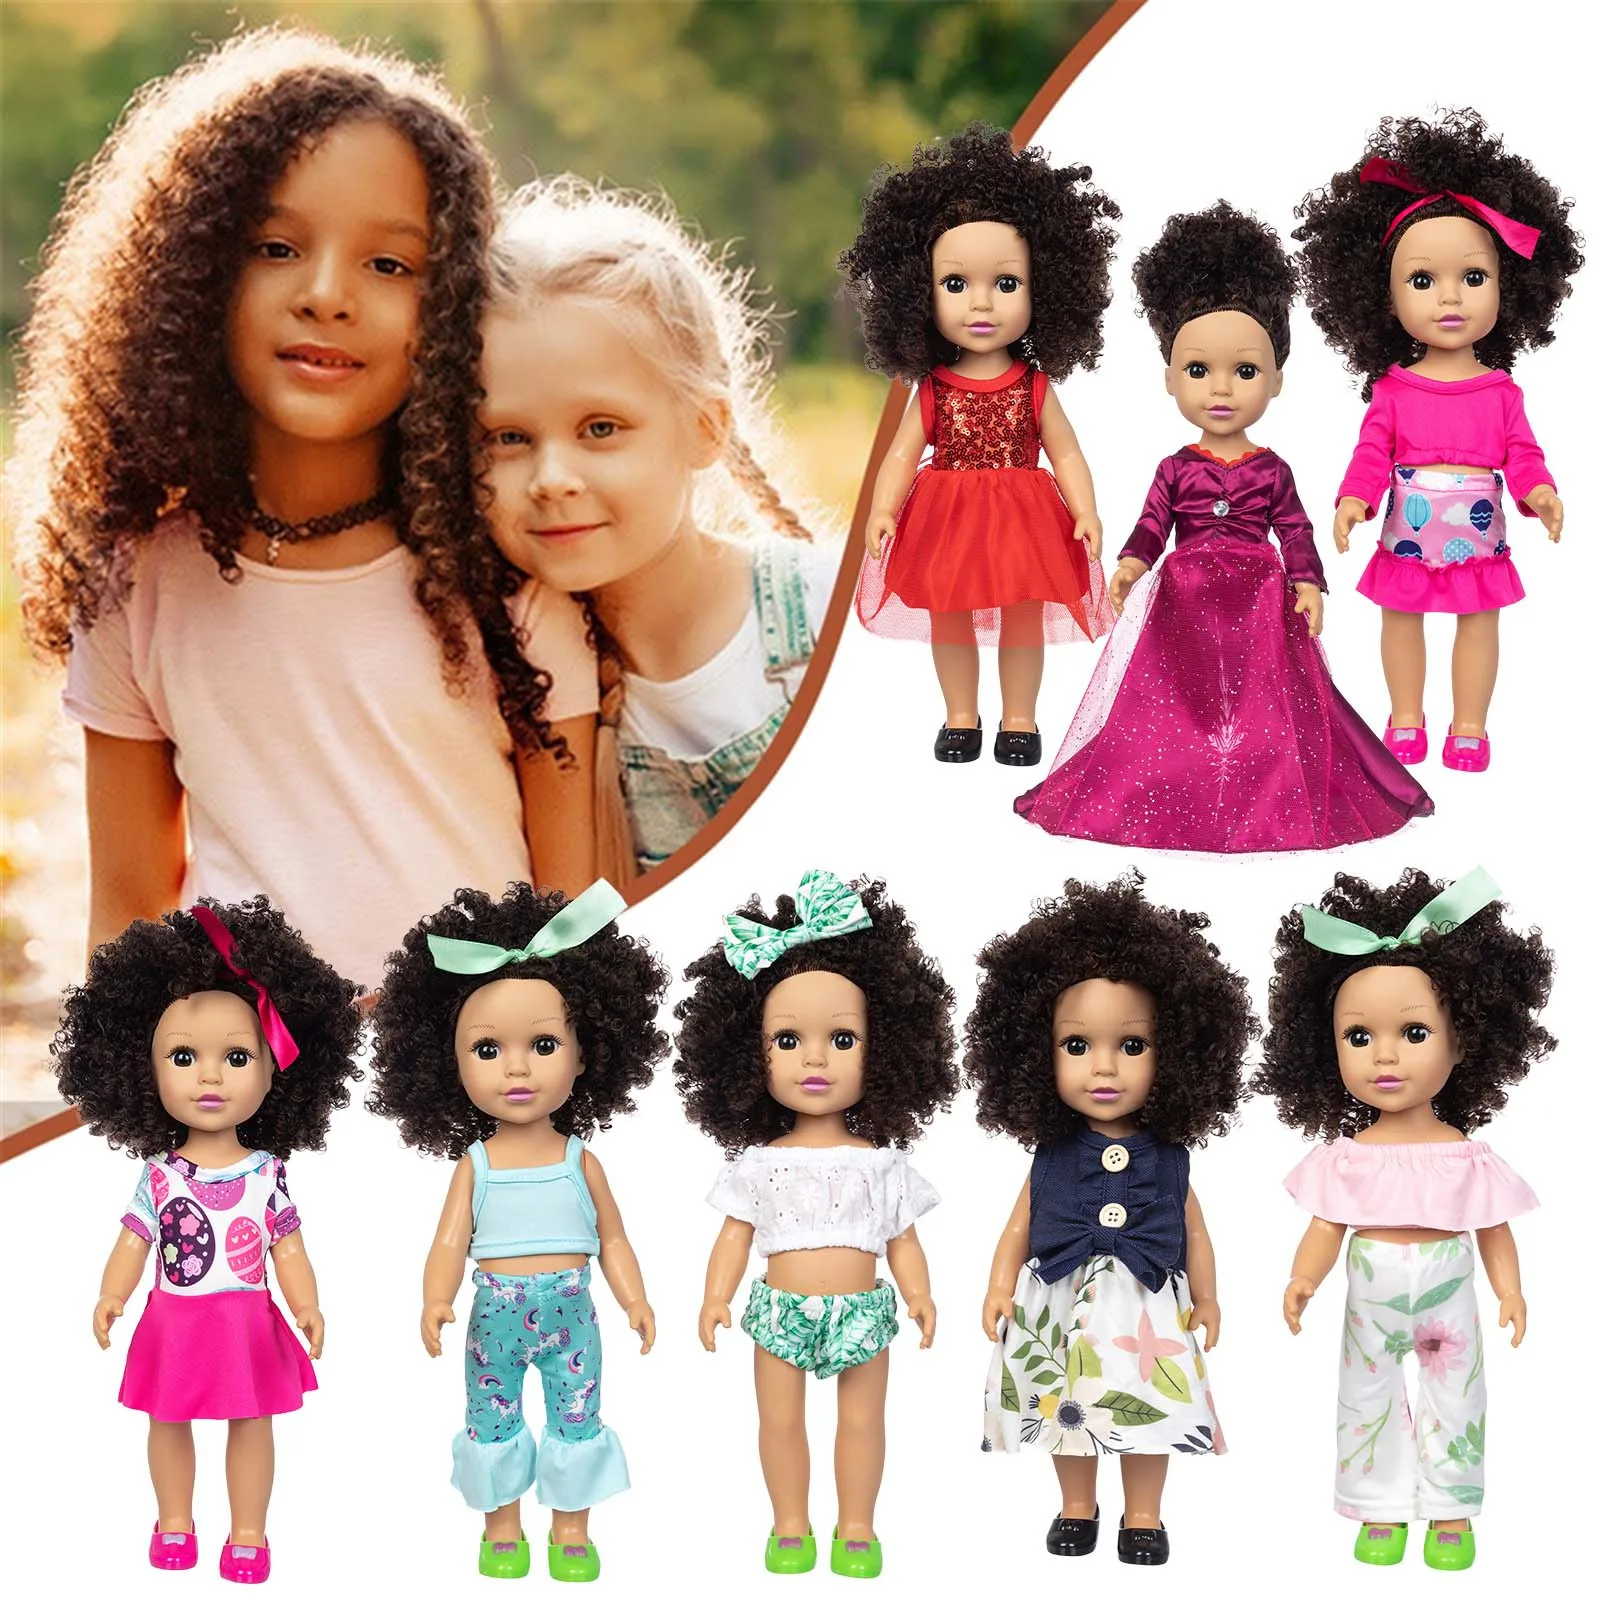 

Curly Hair Cute Doll Simulation Cute Curly Hair Doll 35CM Baby Toy Simulation Doll Gifts for children zabawki dla dzieci